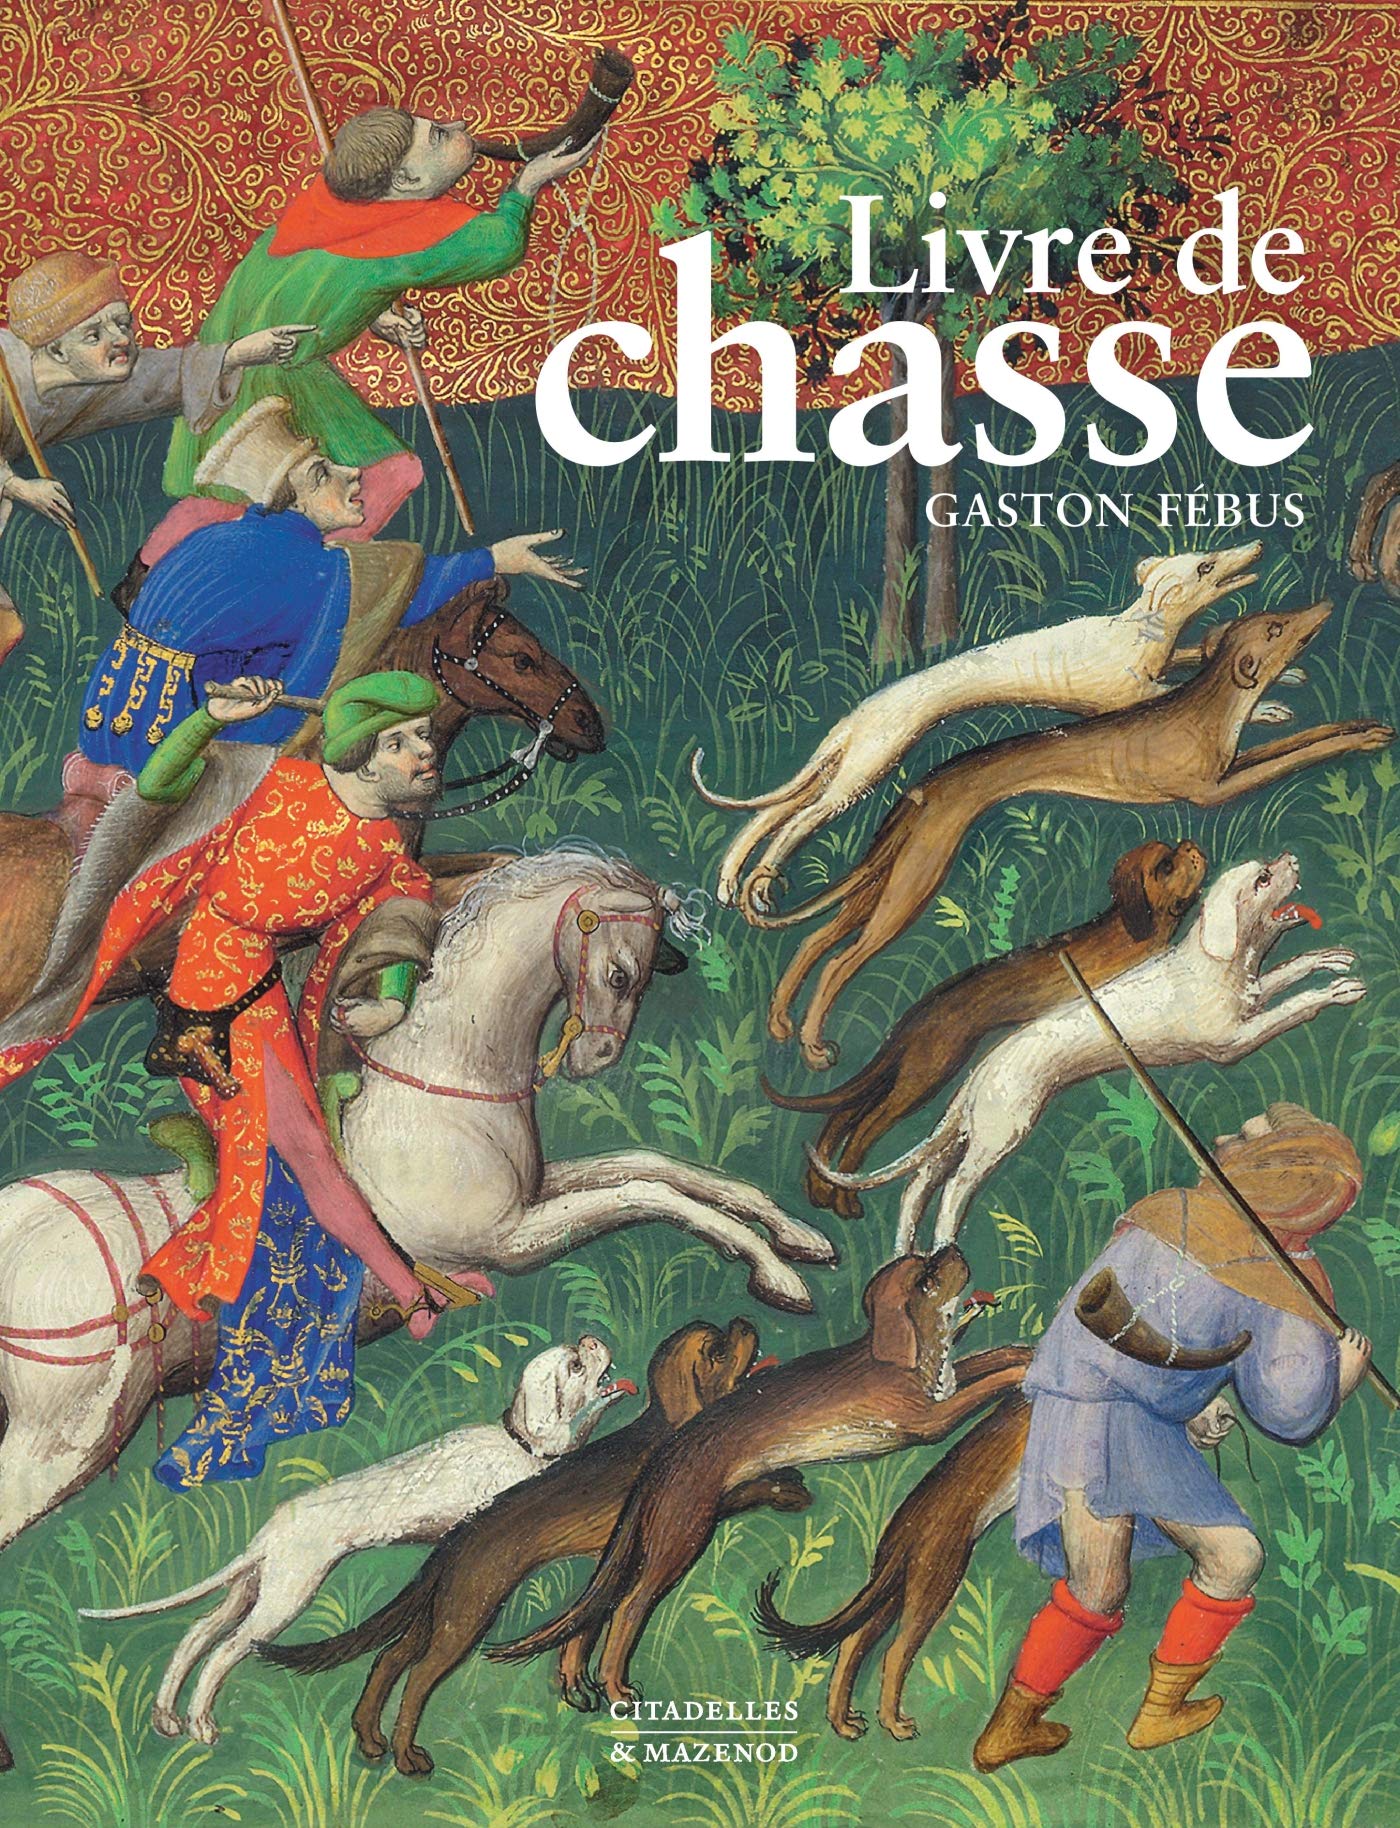 Livre de chasse de Gaston Fébus, 2019, 200 p. par Y. Christe, F. Avril et W. M. Voelke